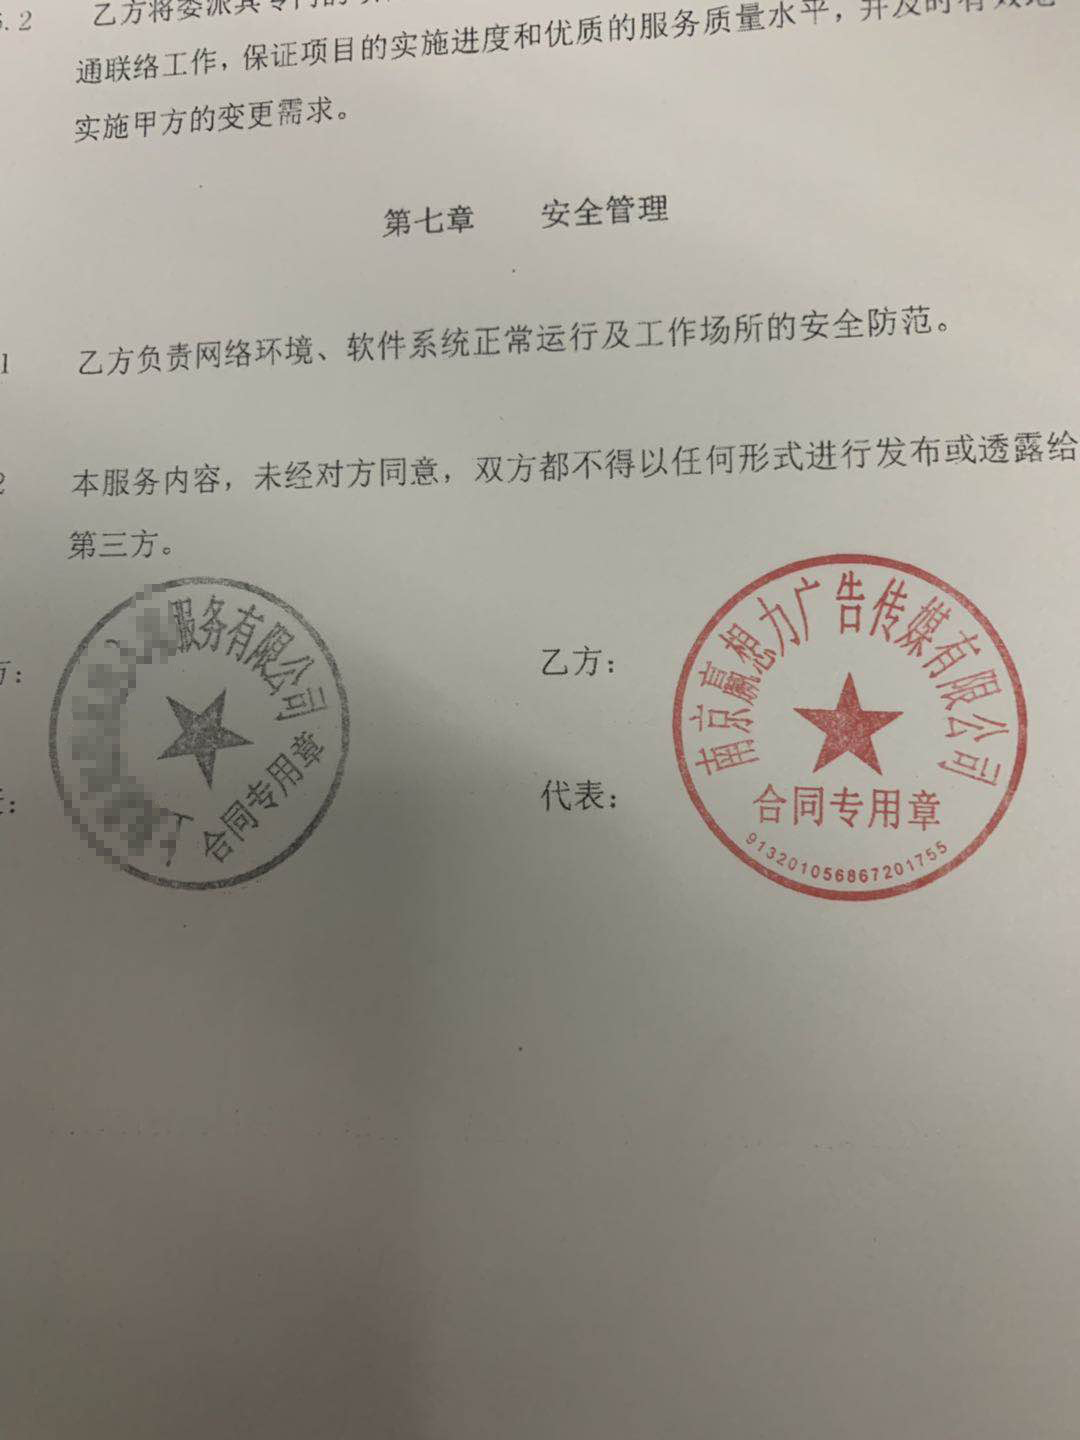 重庆呼叫中心公司不受办公地点和规模的限制，全面降低号码宣传费用